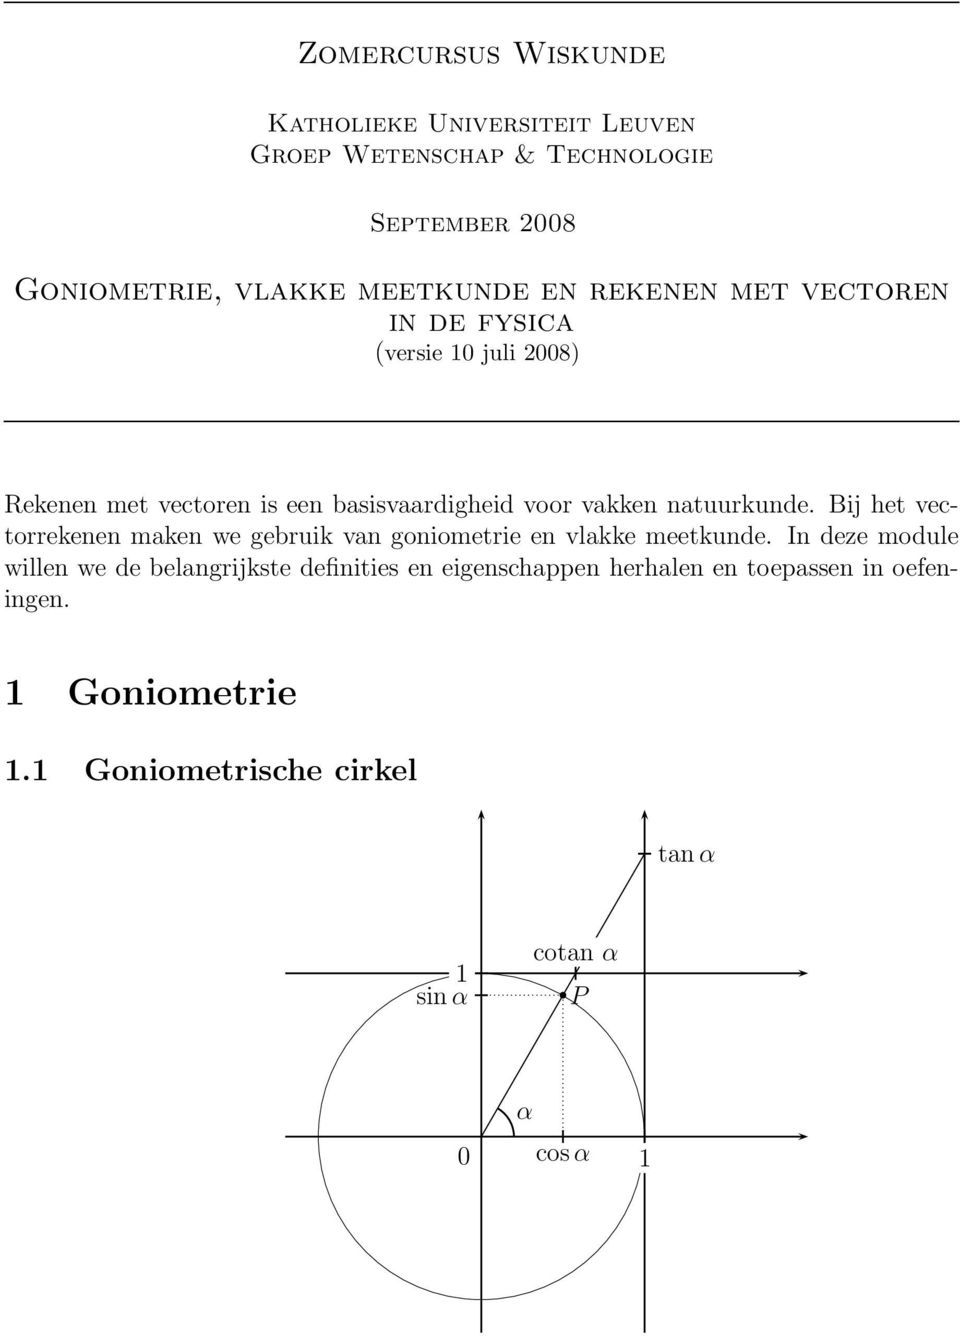 Bij het vectorrekenen maken we gebruik van goniometrie en vlakke meetkunde.